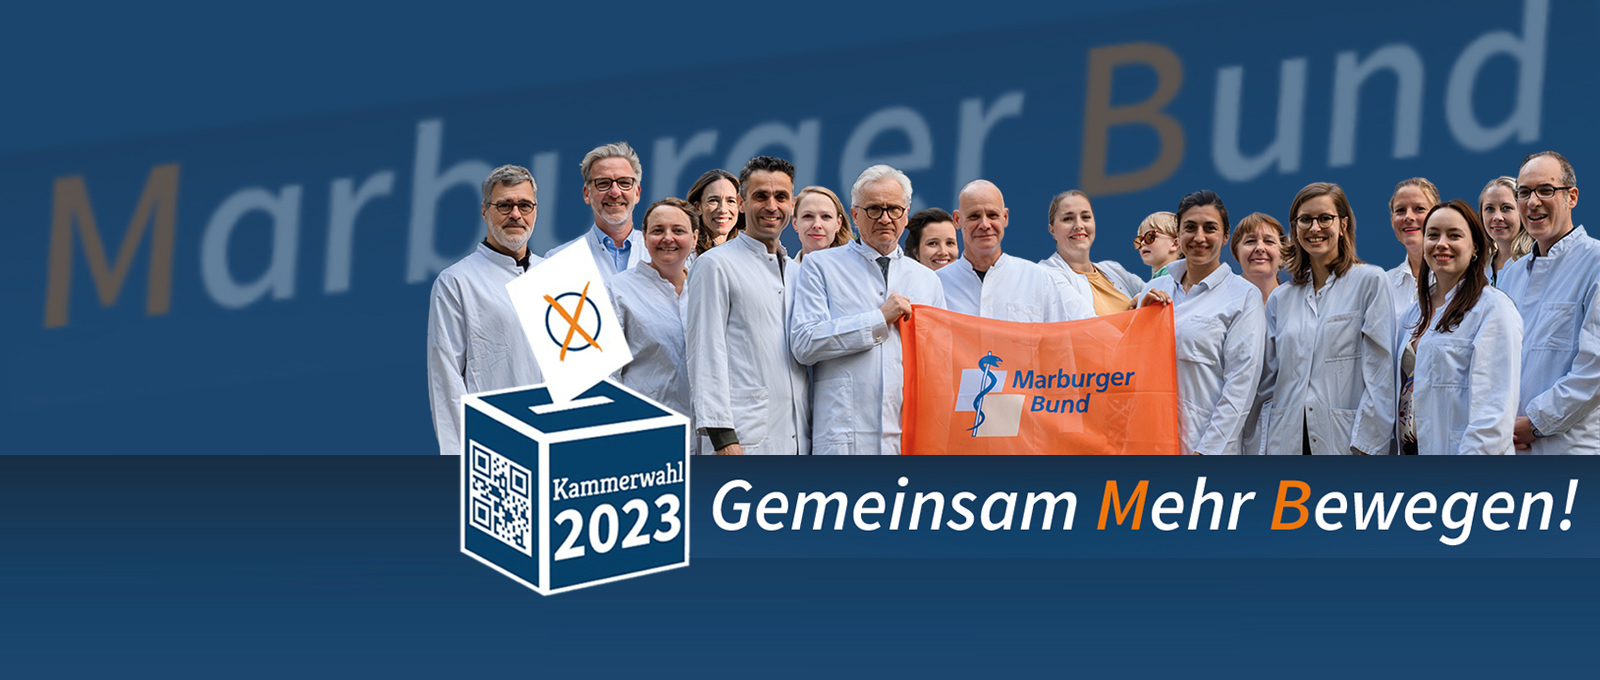 MB-Kandidaten für die Kammerwahl Berlin 2023